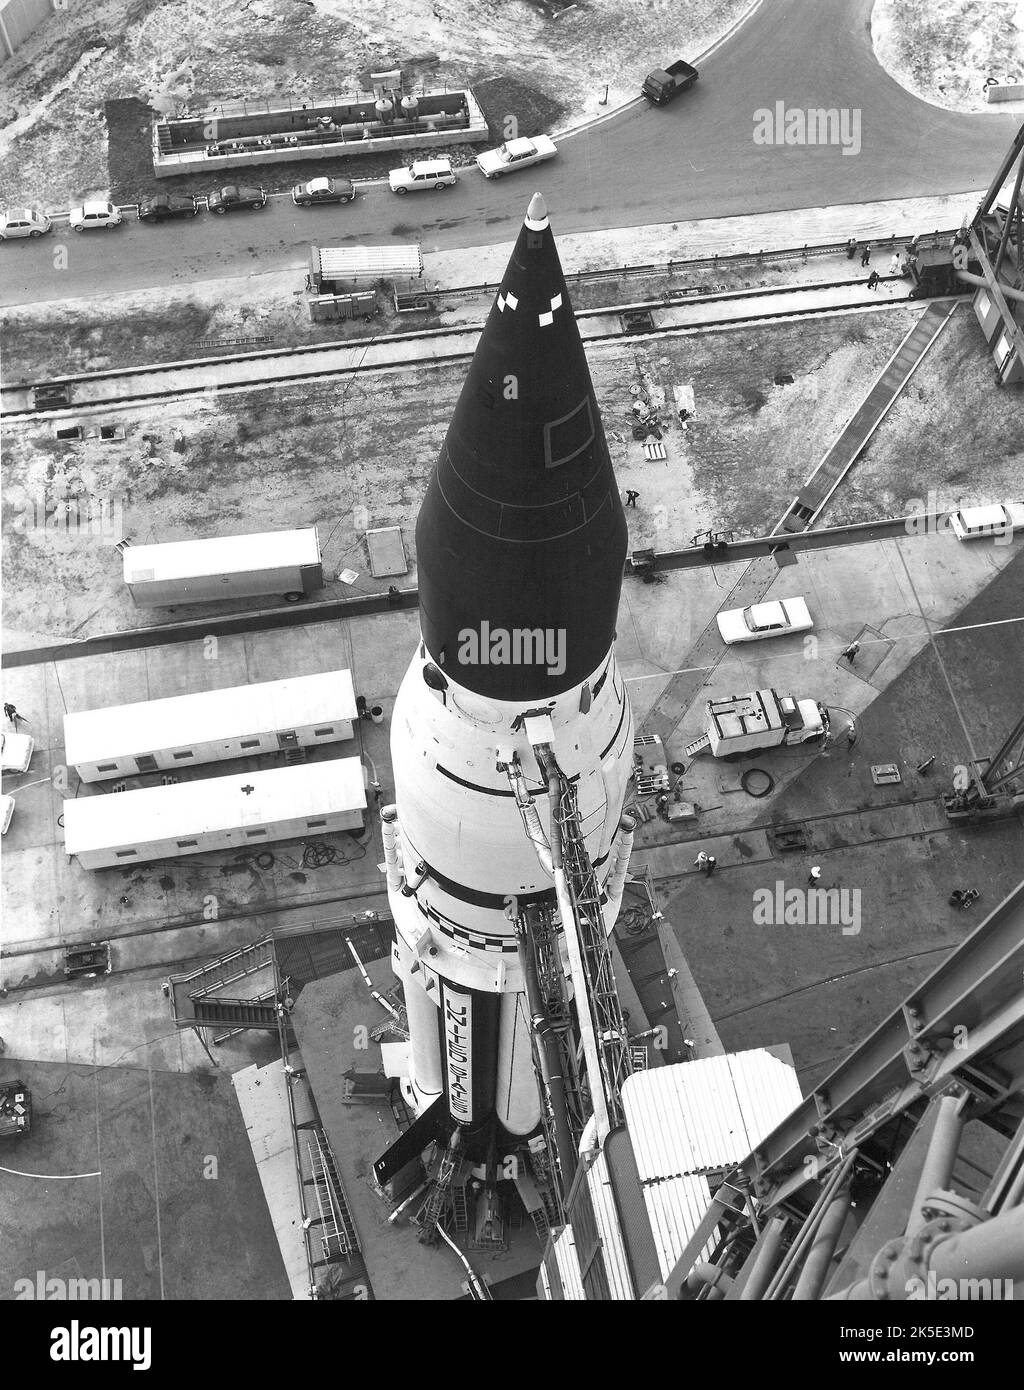 El VEHÍCULO DE LANZAMIENTO DEL APOLLO 6 SAJANDO EL EDIFICIO DE CONJUNTO DE VEHÍCULOS DE KENNEDY PARA LA PATA DE 39A La misión no tripulada fue el vuelo final de calificación del vehículo de lanzamiento Saturn V y la nave espacial Apollo. Los objetivos principales de la misión eran demostrar la integridad estructural y térmica y la compatibilidad del vehículo de lanzamiento y la nave espacial, confirmar las cargas de lanzamiento y las características dinámicas, y verificar las separaciones de etapas, la propulsión, la orientación y el control, los sistemas eléctricos, el sistema de detección de emergencia, y las instalaciones y operaciones de apoyo a la misión. Abril 1968 Imagen / crédito de la NASA: NASA Foto de stock